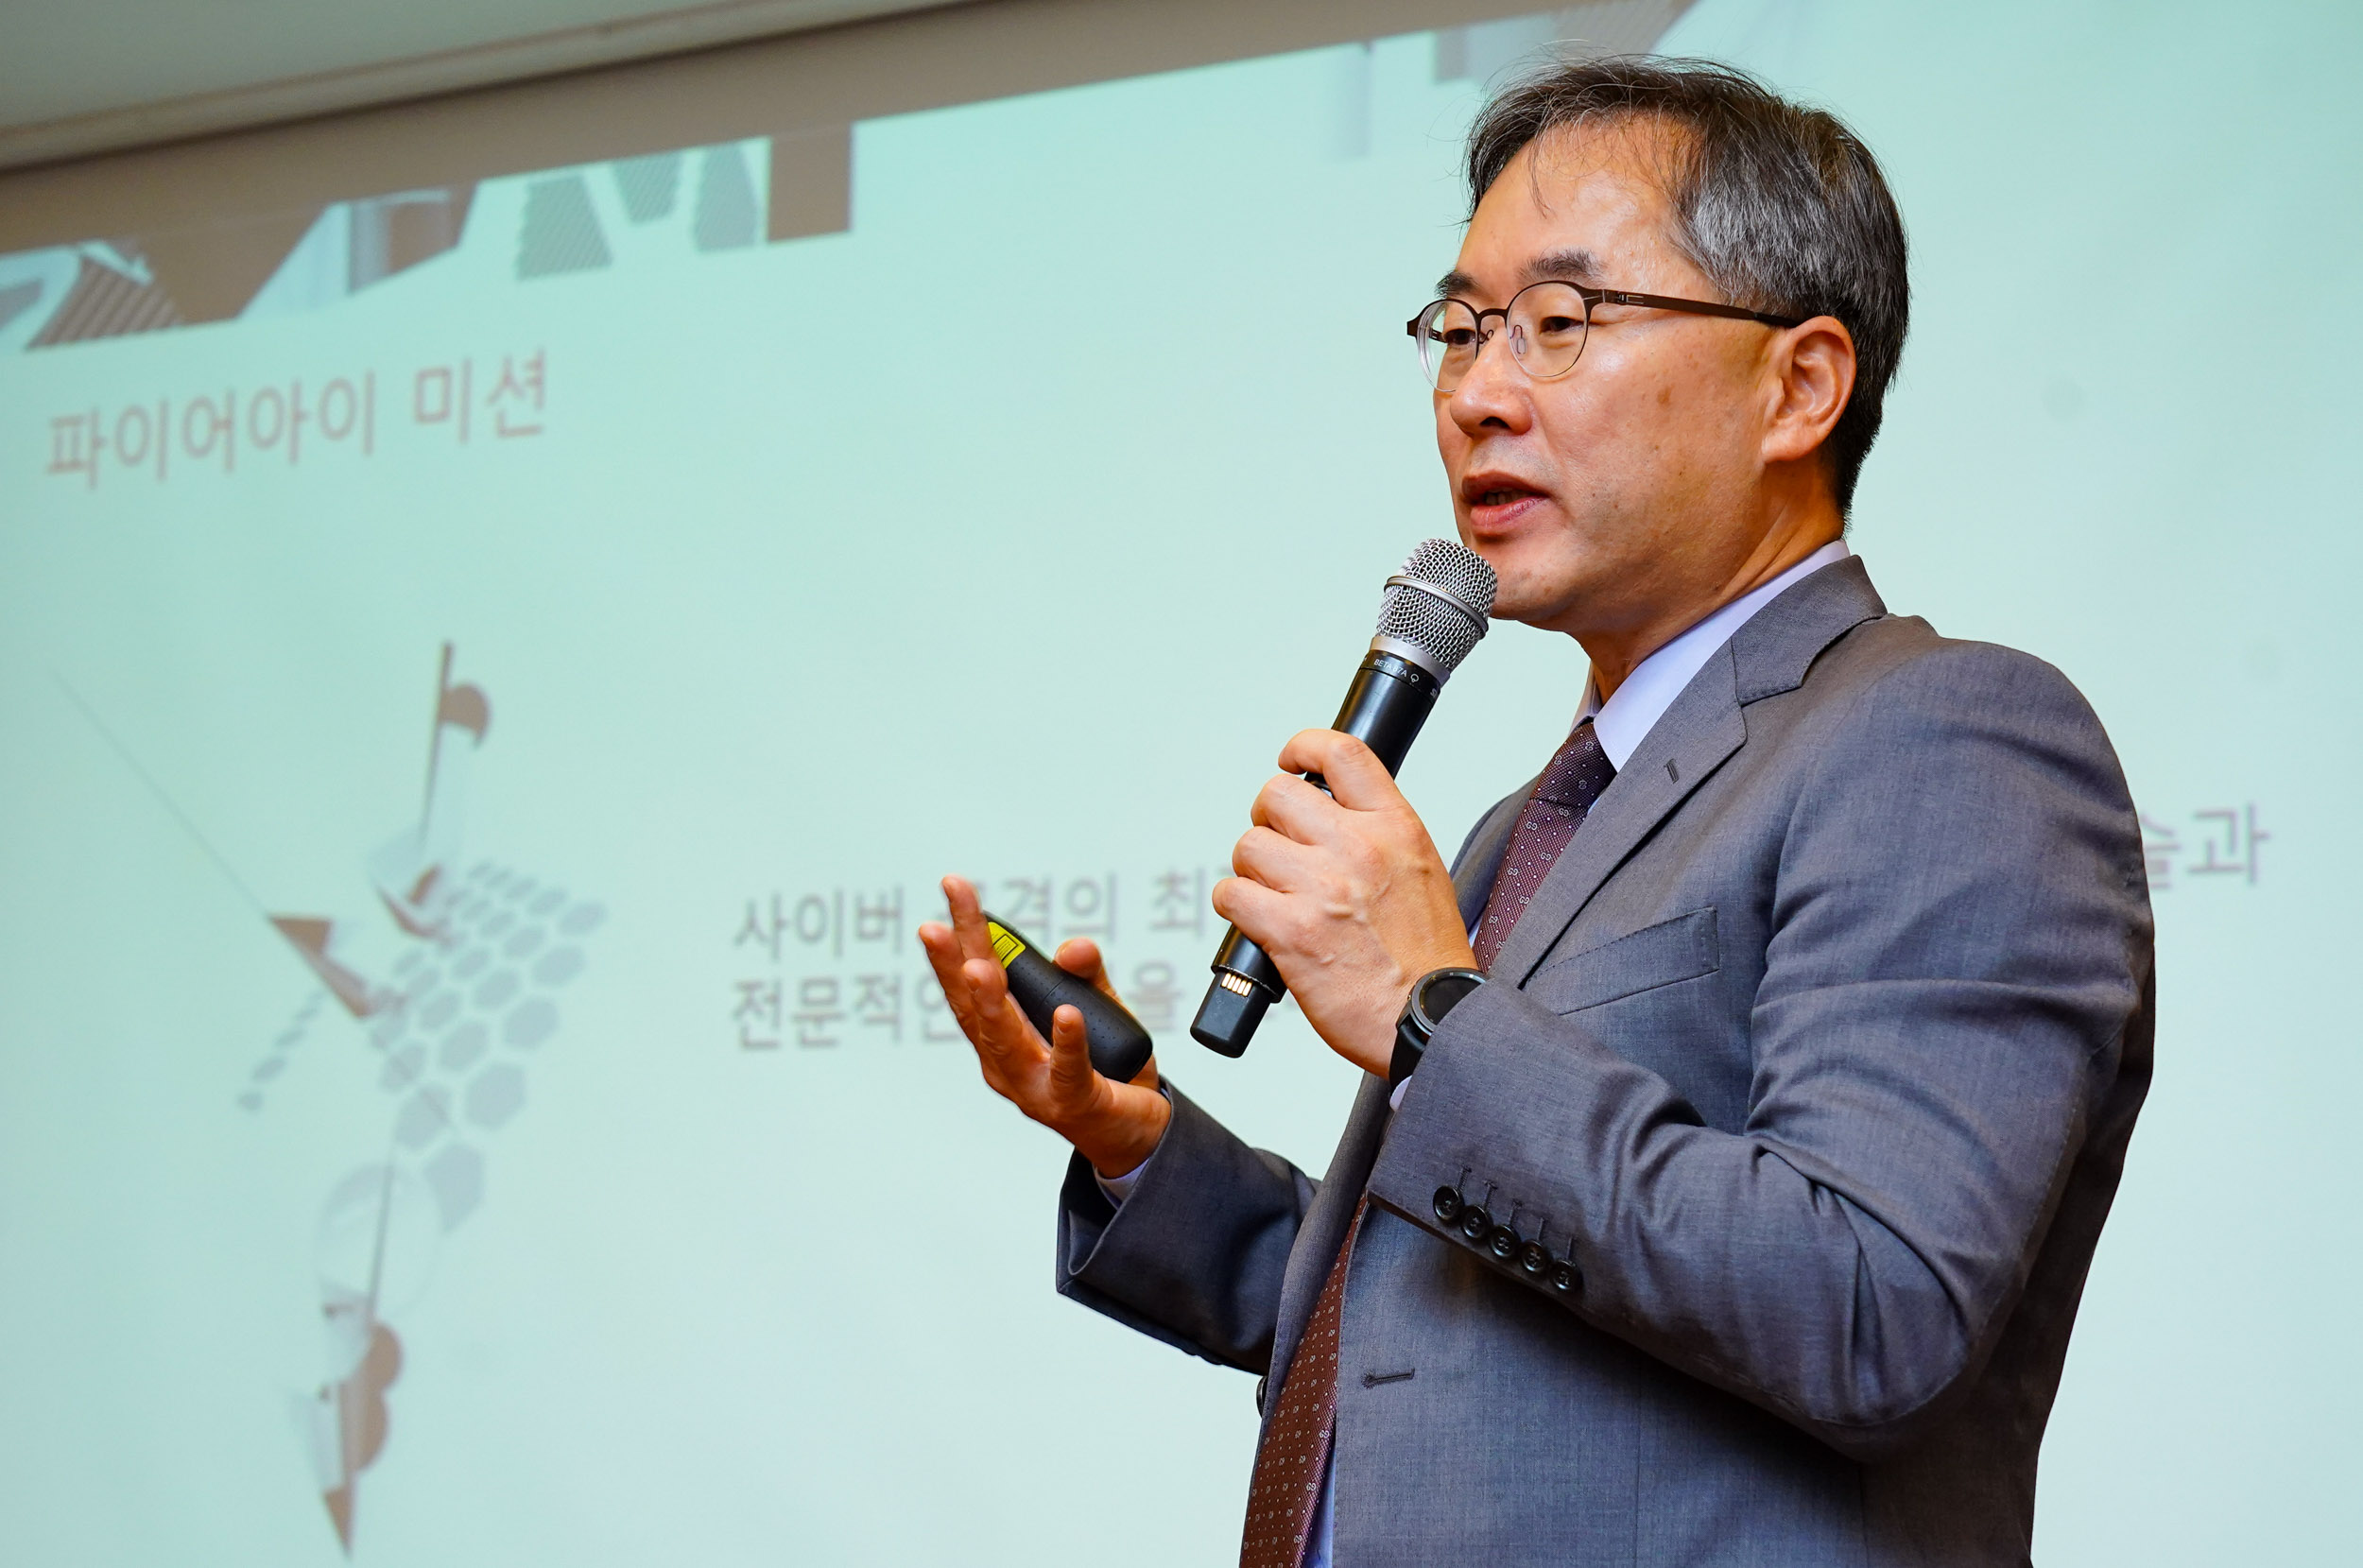 전수홍 파이어아이 코리아 지사장이 23일 ‘2019년 이후의 사이버 보안 보고서’ 내용을 설명하고 있다. 파이어아이 코리아 제공